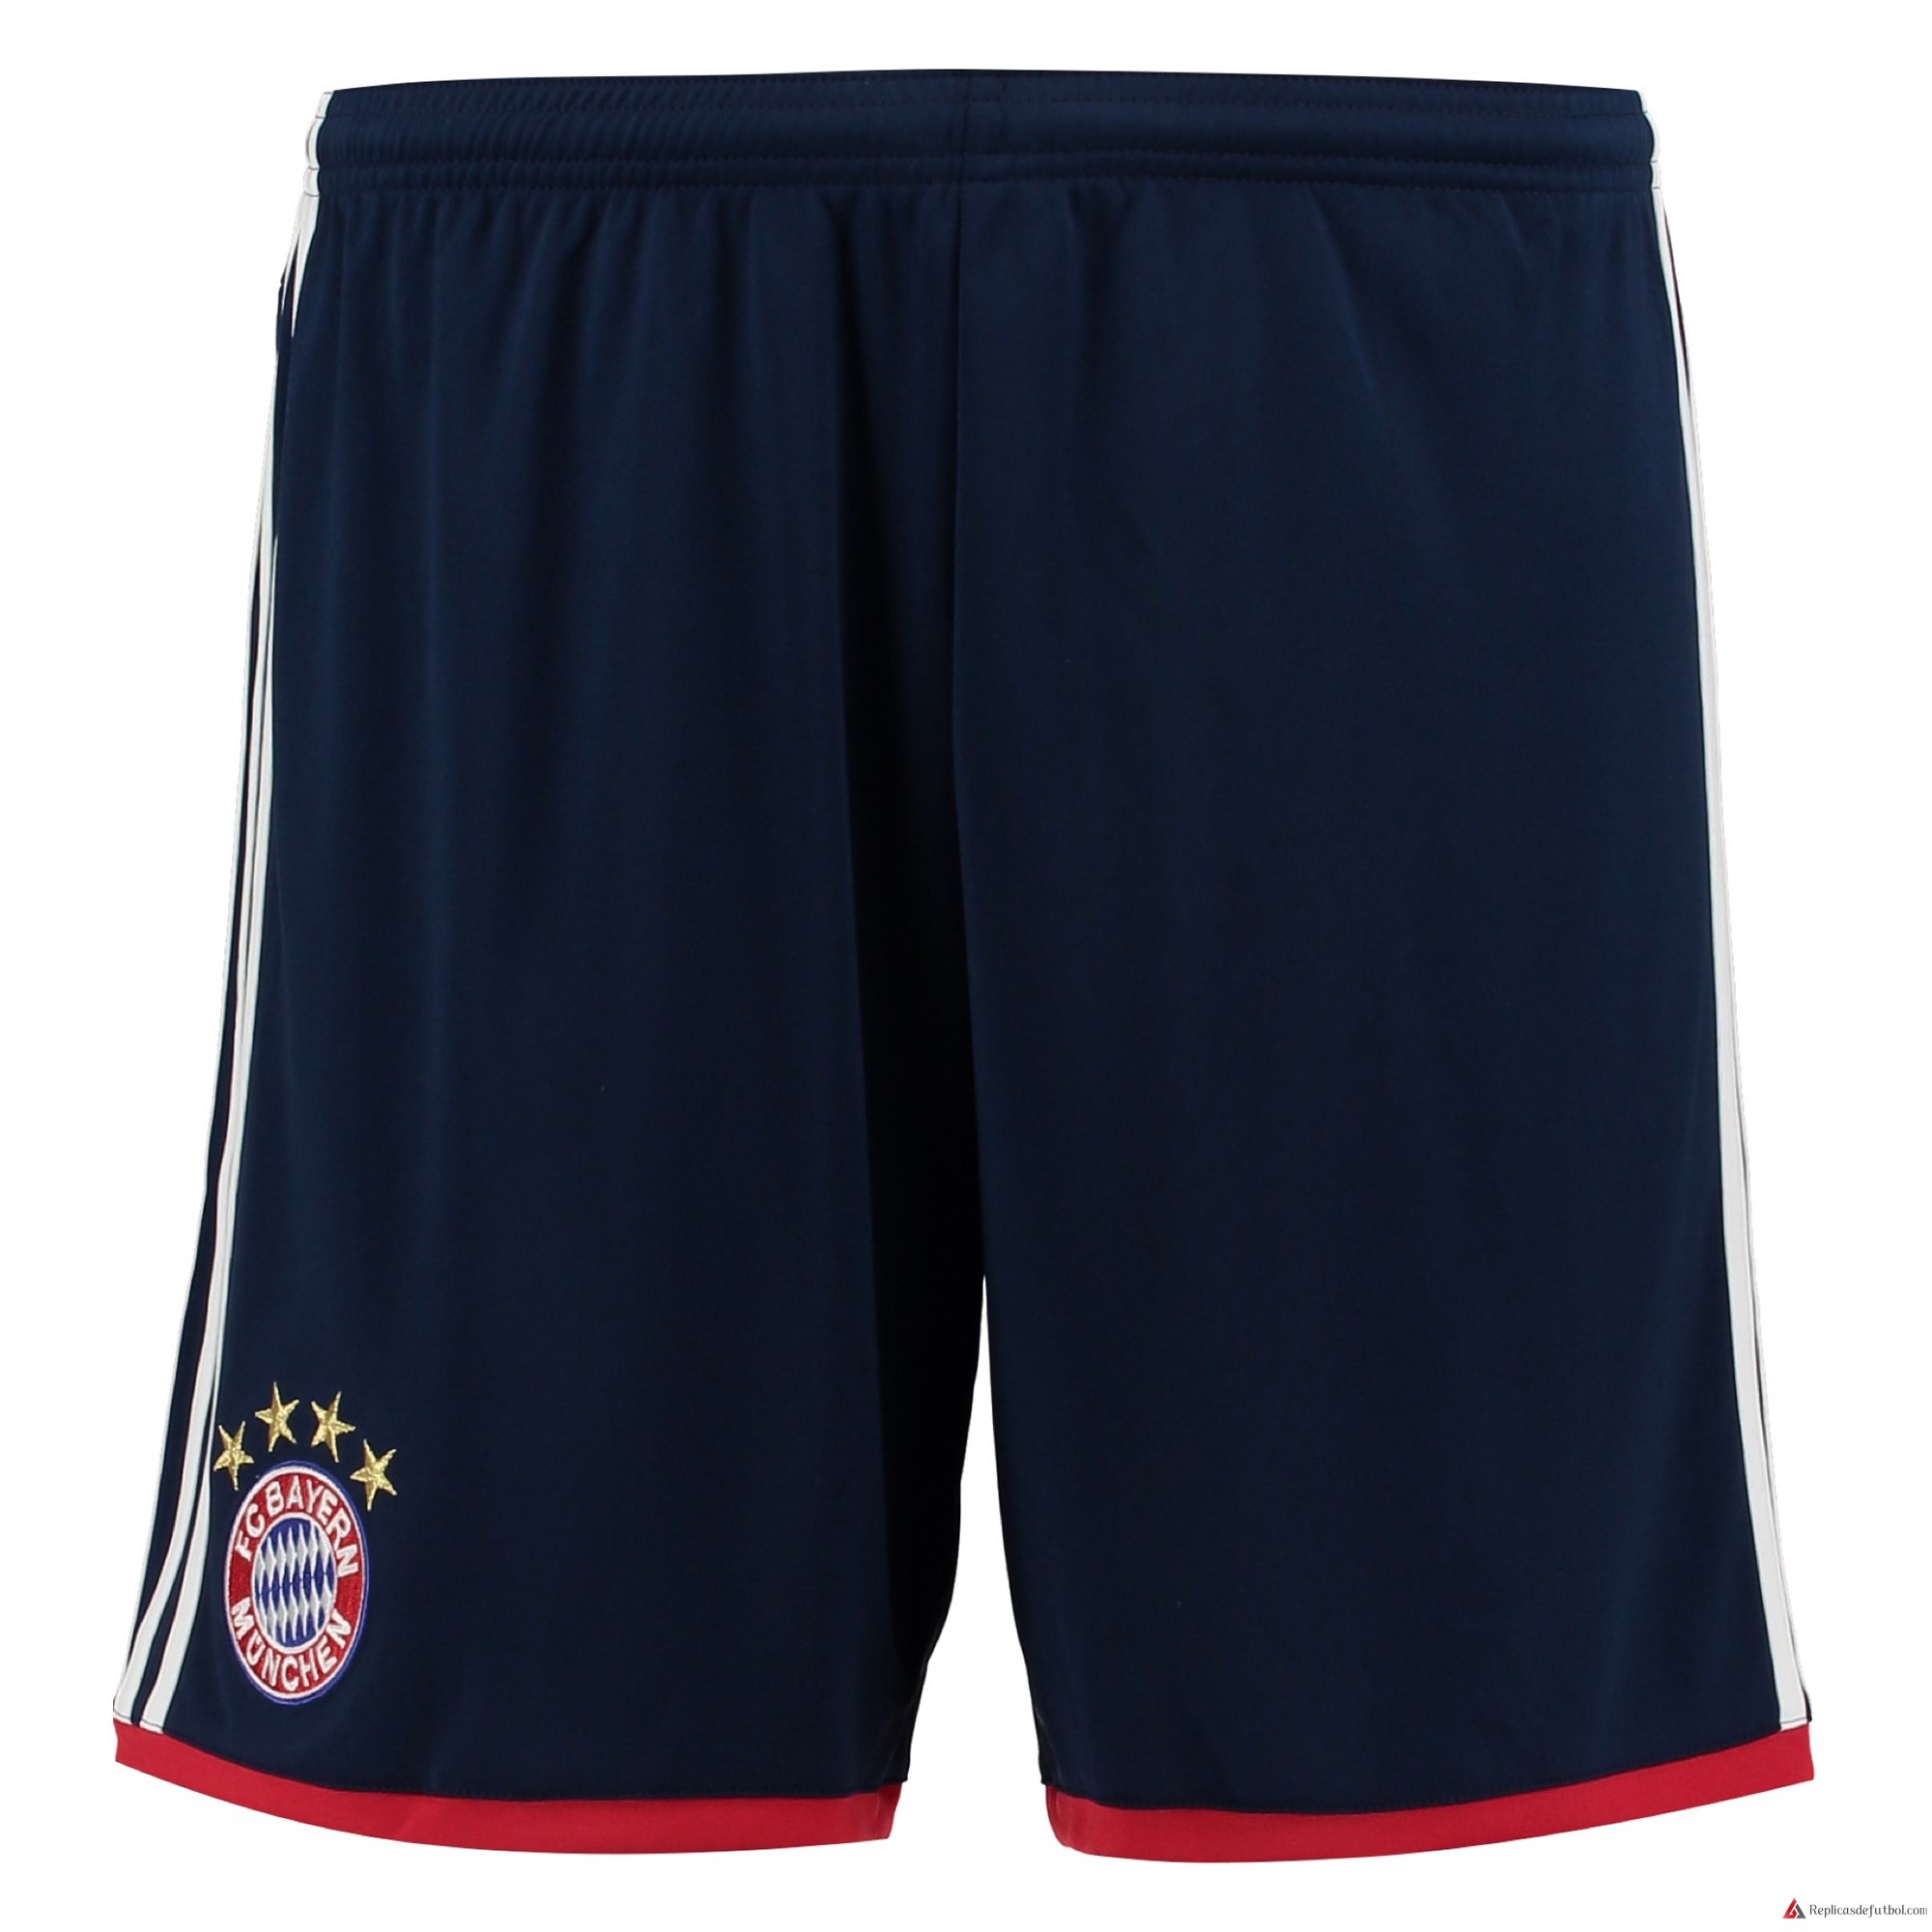 Pantalones Bayern Munich Segunda equipación 2017-2018